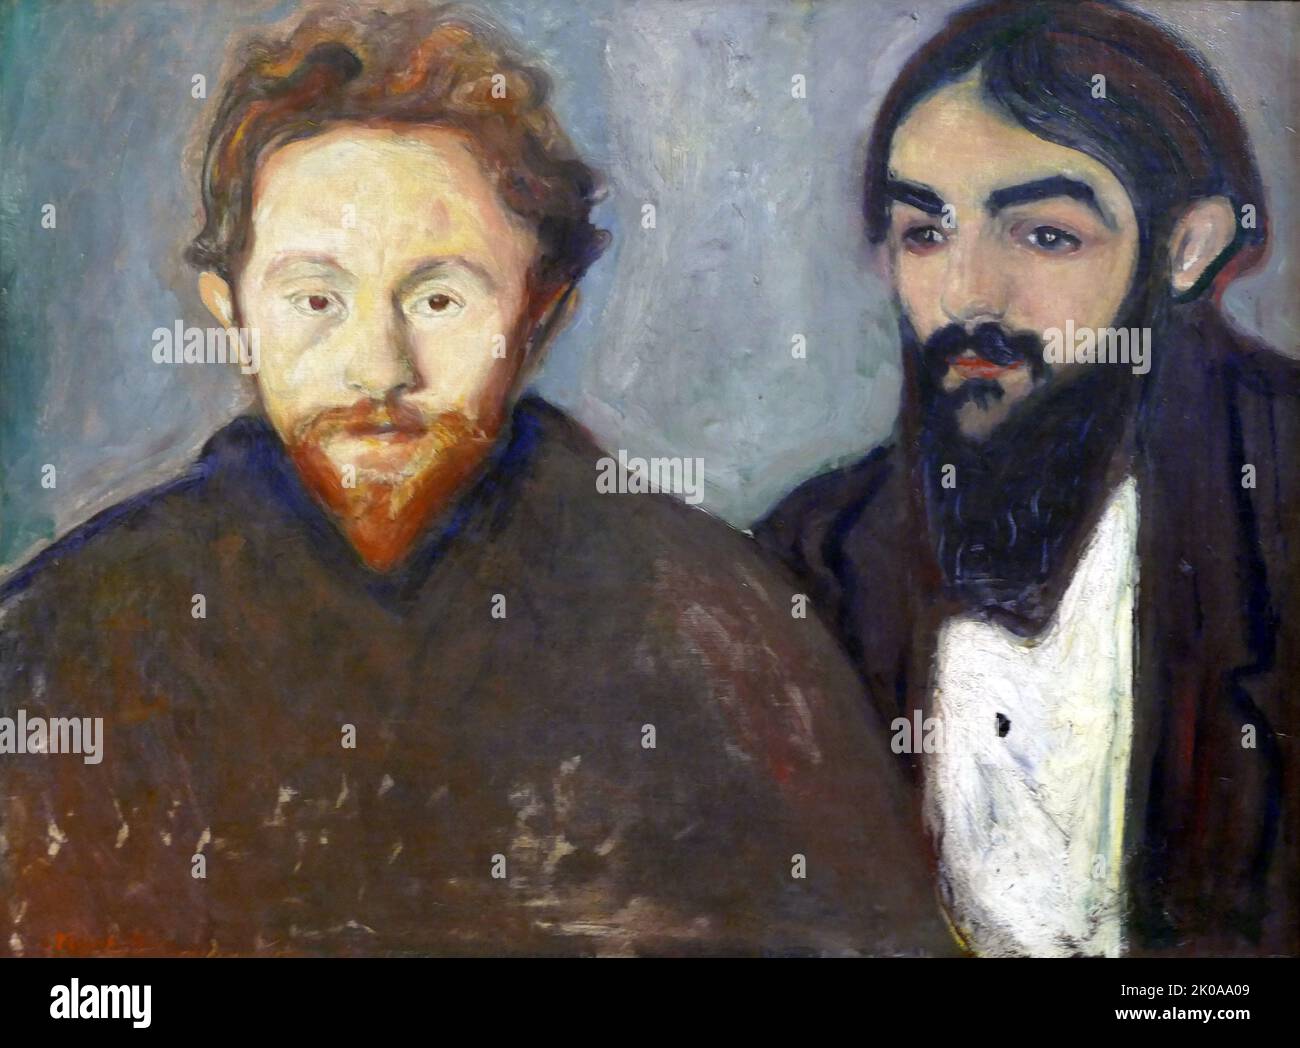 Le peintre Paul Hermann et le médecin Paul Contard, par Edvard Munch, 1897. Edvard Munch (12 décembre 1863 - 23 janvier 1944) est un peintre norvégien. Son œuvre la plus connue, The Scream, est devenue l'une des images emblématiques de l'art du monde Banque D'Images